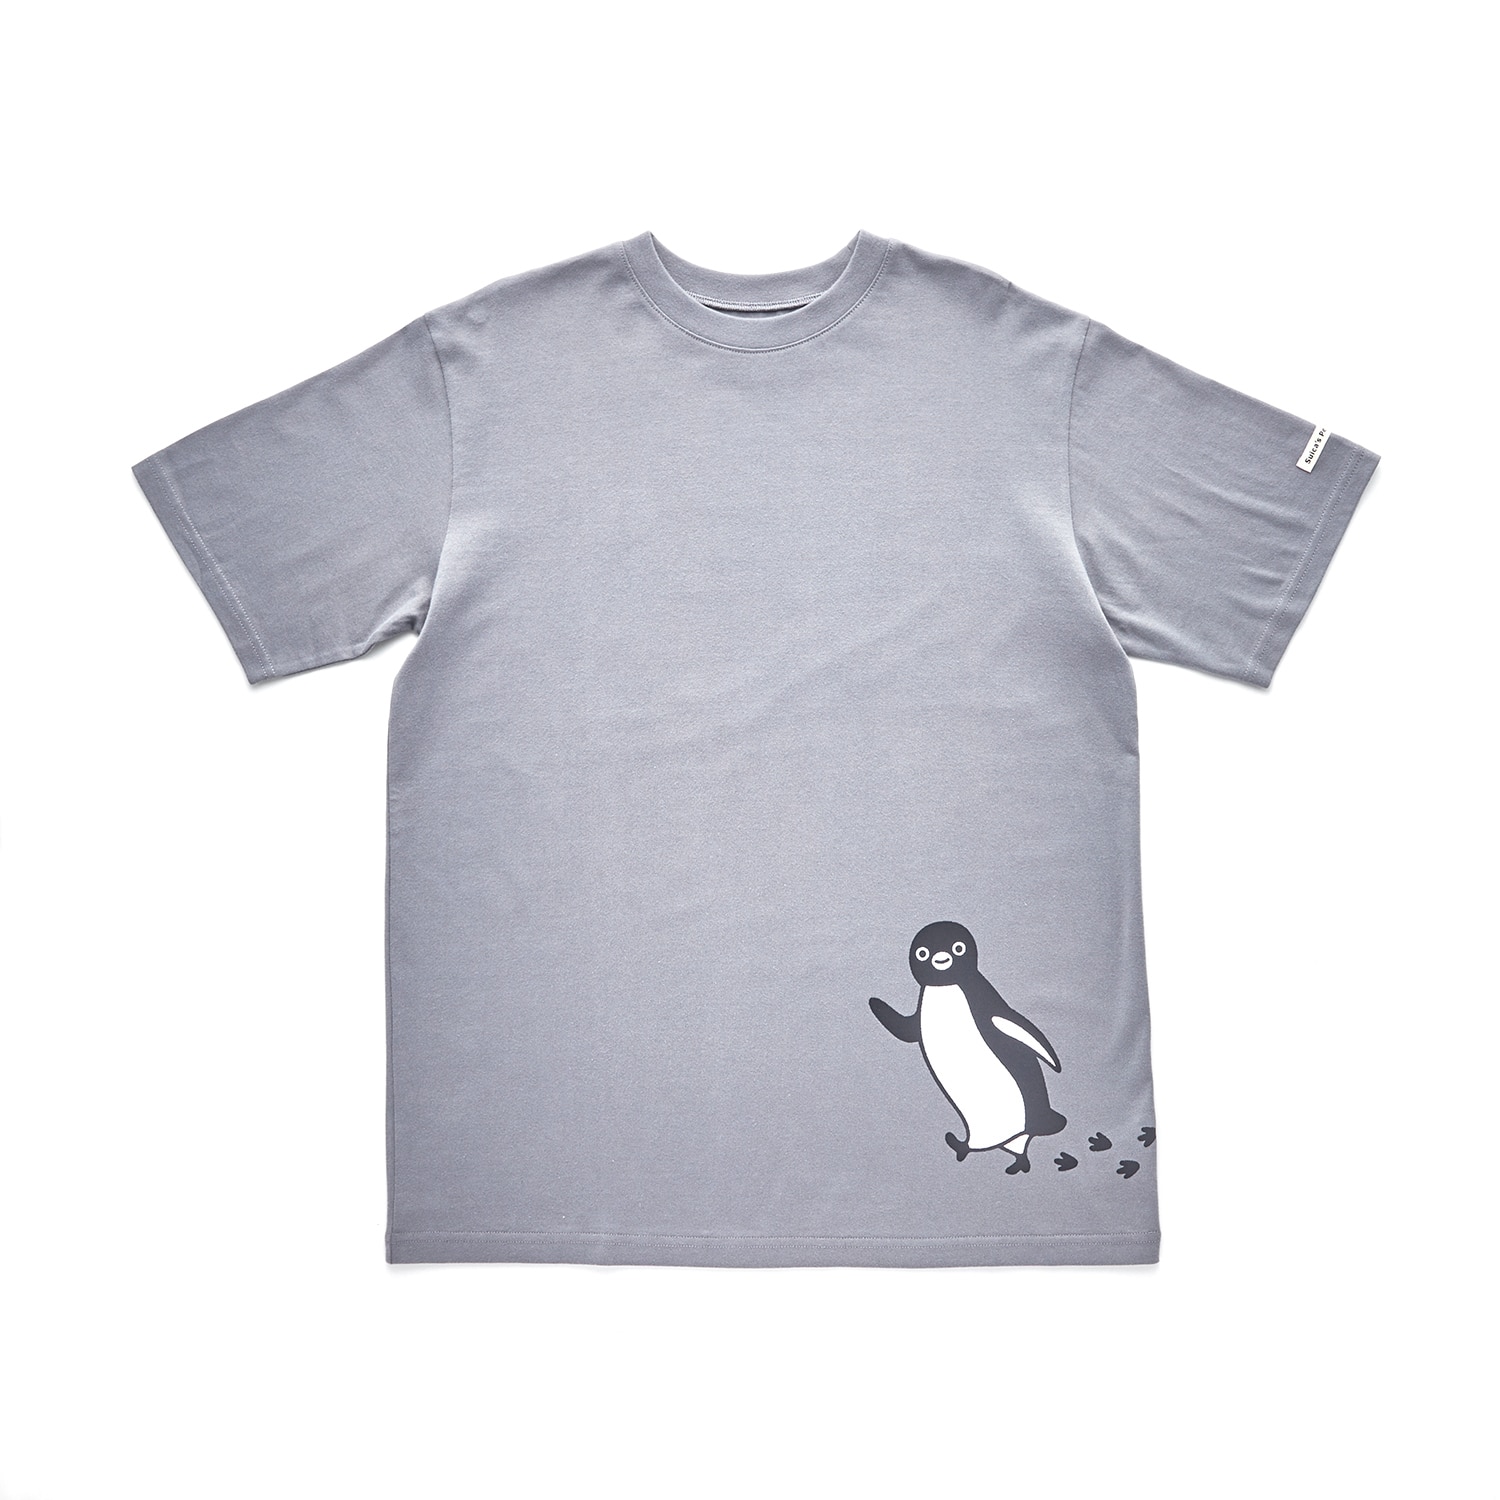 Suicaのペンギン ベルメゾン 親子でつながるユニセックス半袖Tシャツ「Suicaのペンギン」 チャコールグレー L